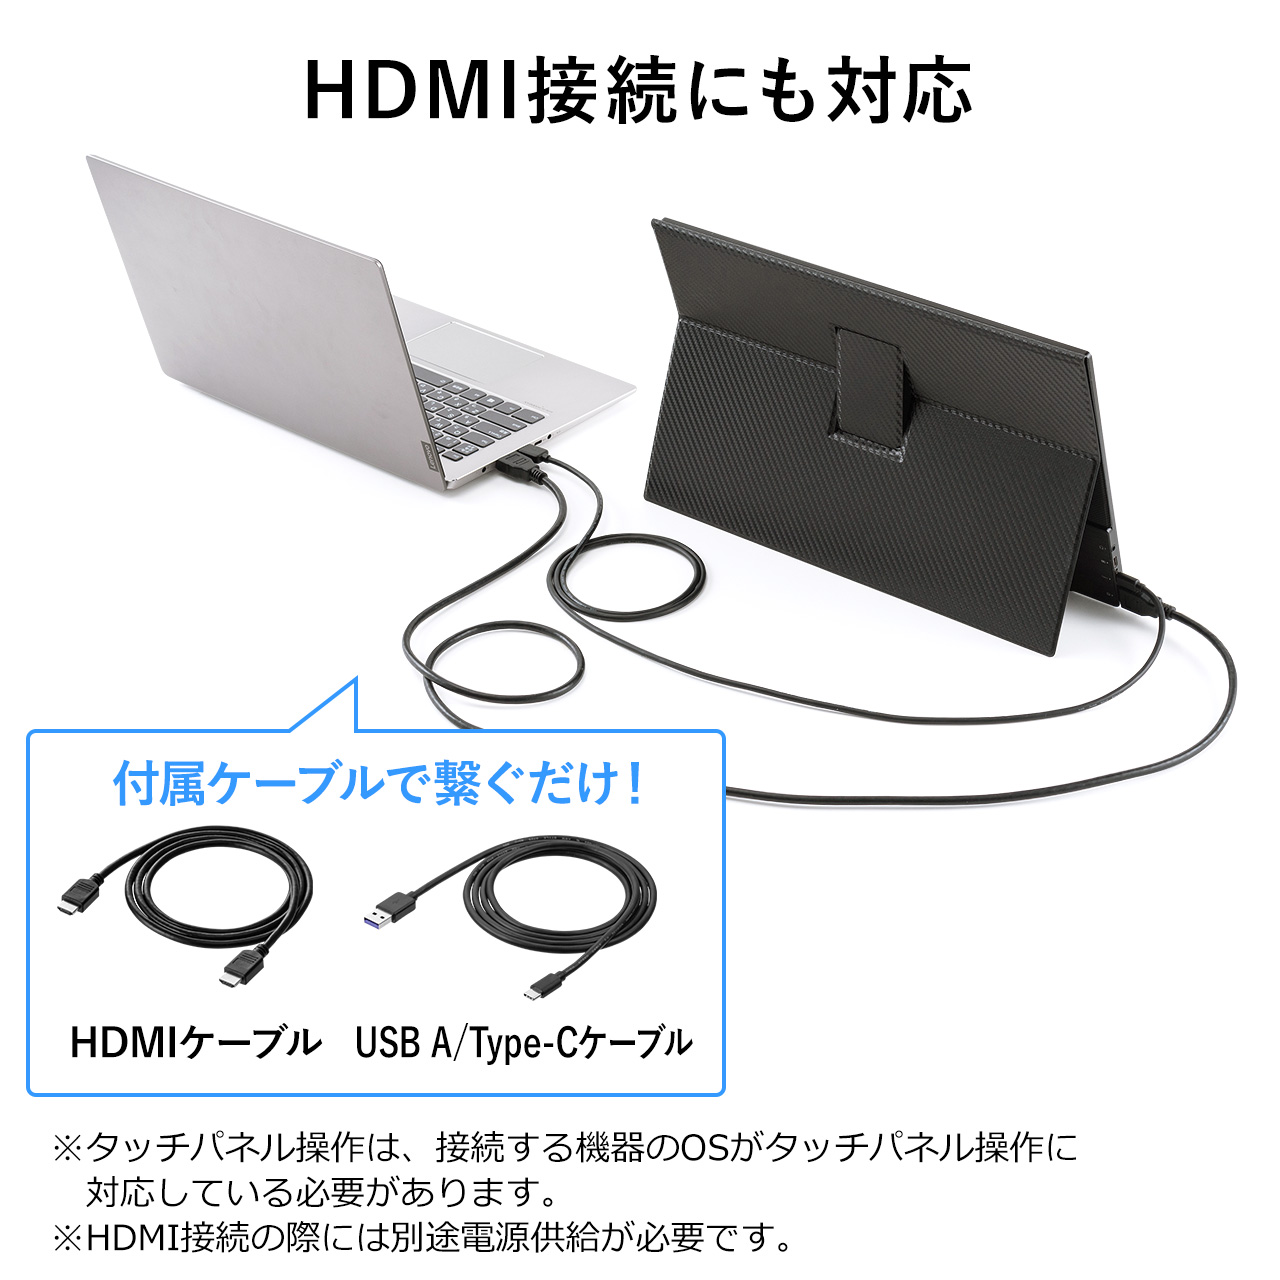 モバイルモニター タッチ操作対応 16.1インチ フルHD IPS 光沢 グレア USB Type-C HDMI入力 スピーカー内蔵 スタンドカバー付き 400-LCD003